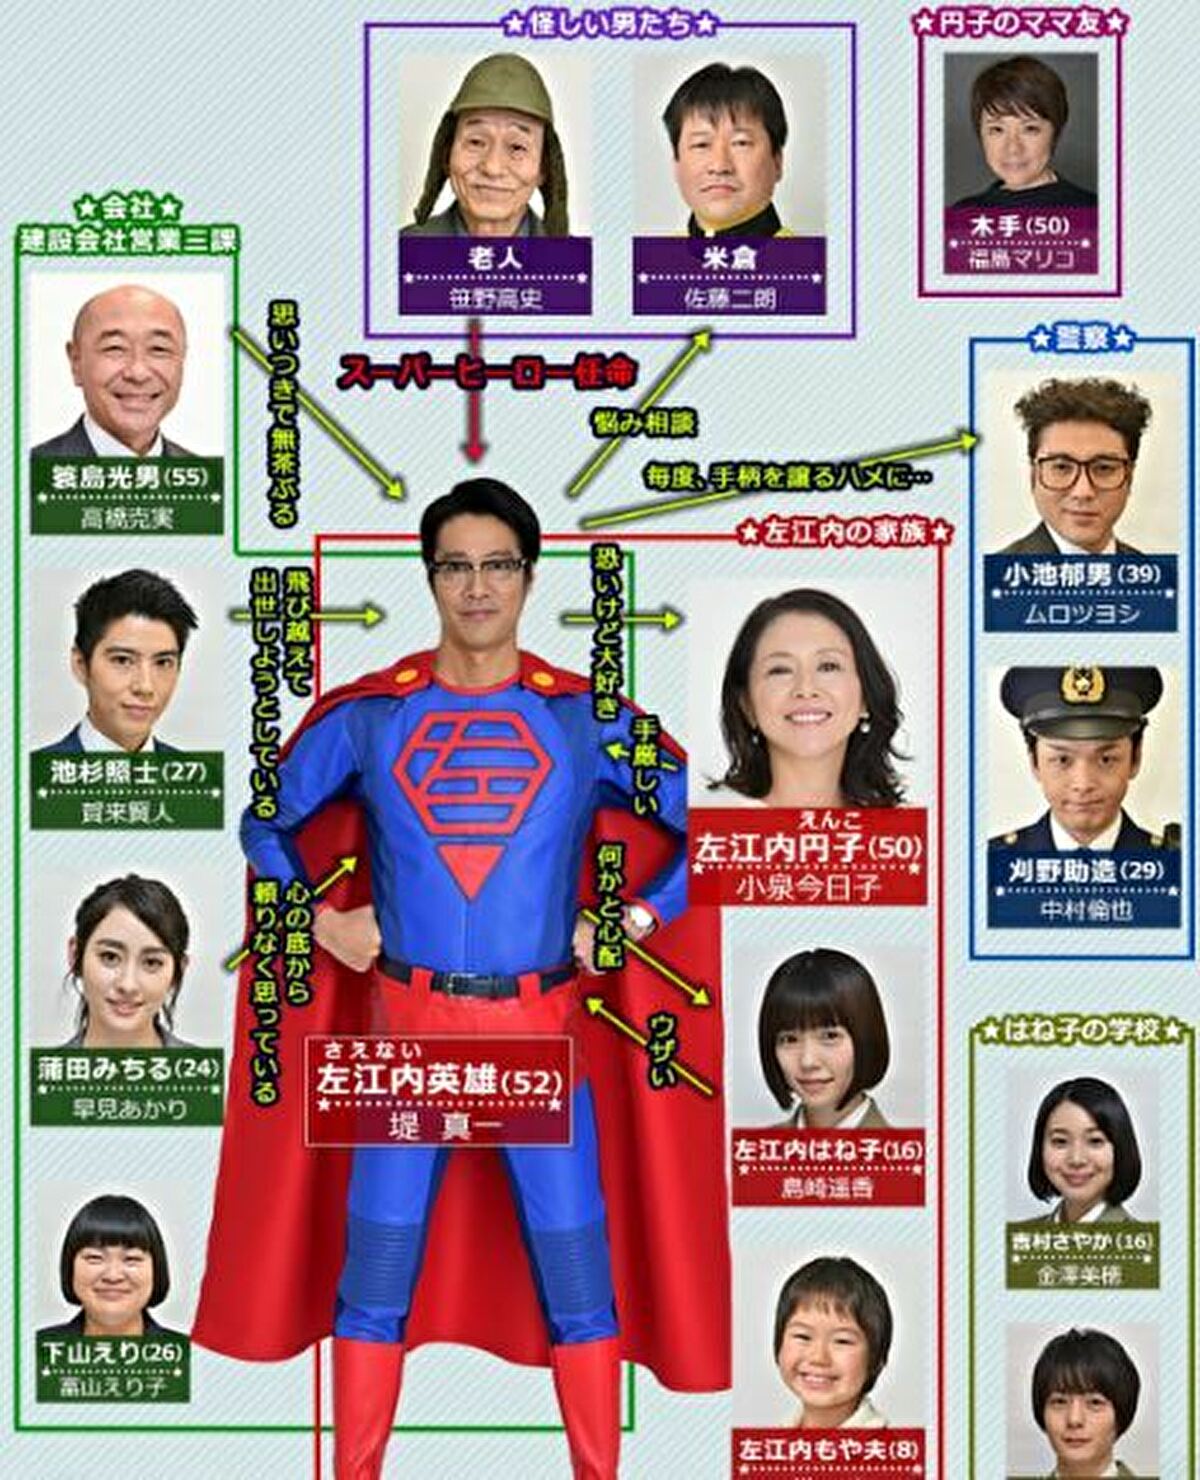 サエないおじさんがヒーロー スーパーサラリーマン左江内氏 特別編の放送が決定 グッチーのそれマジか